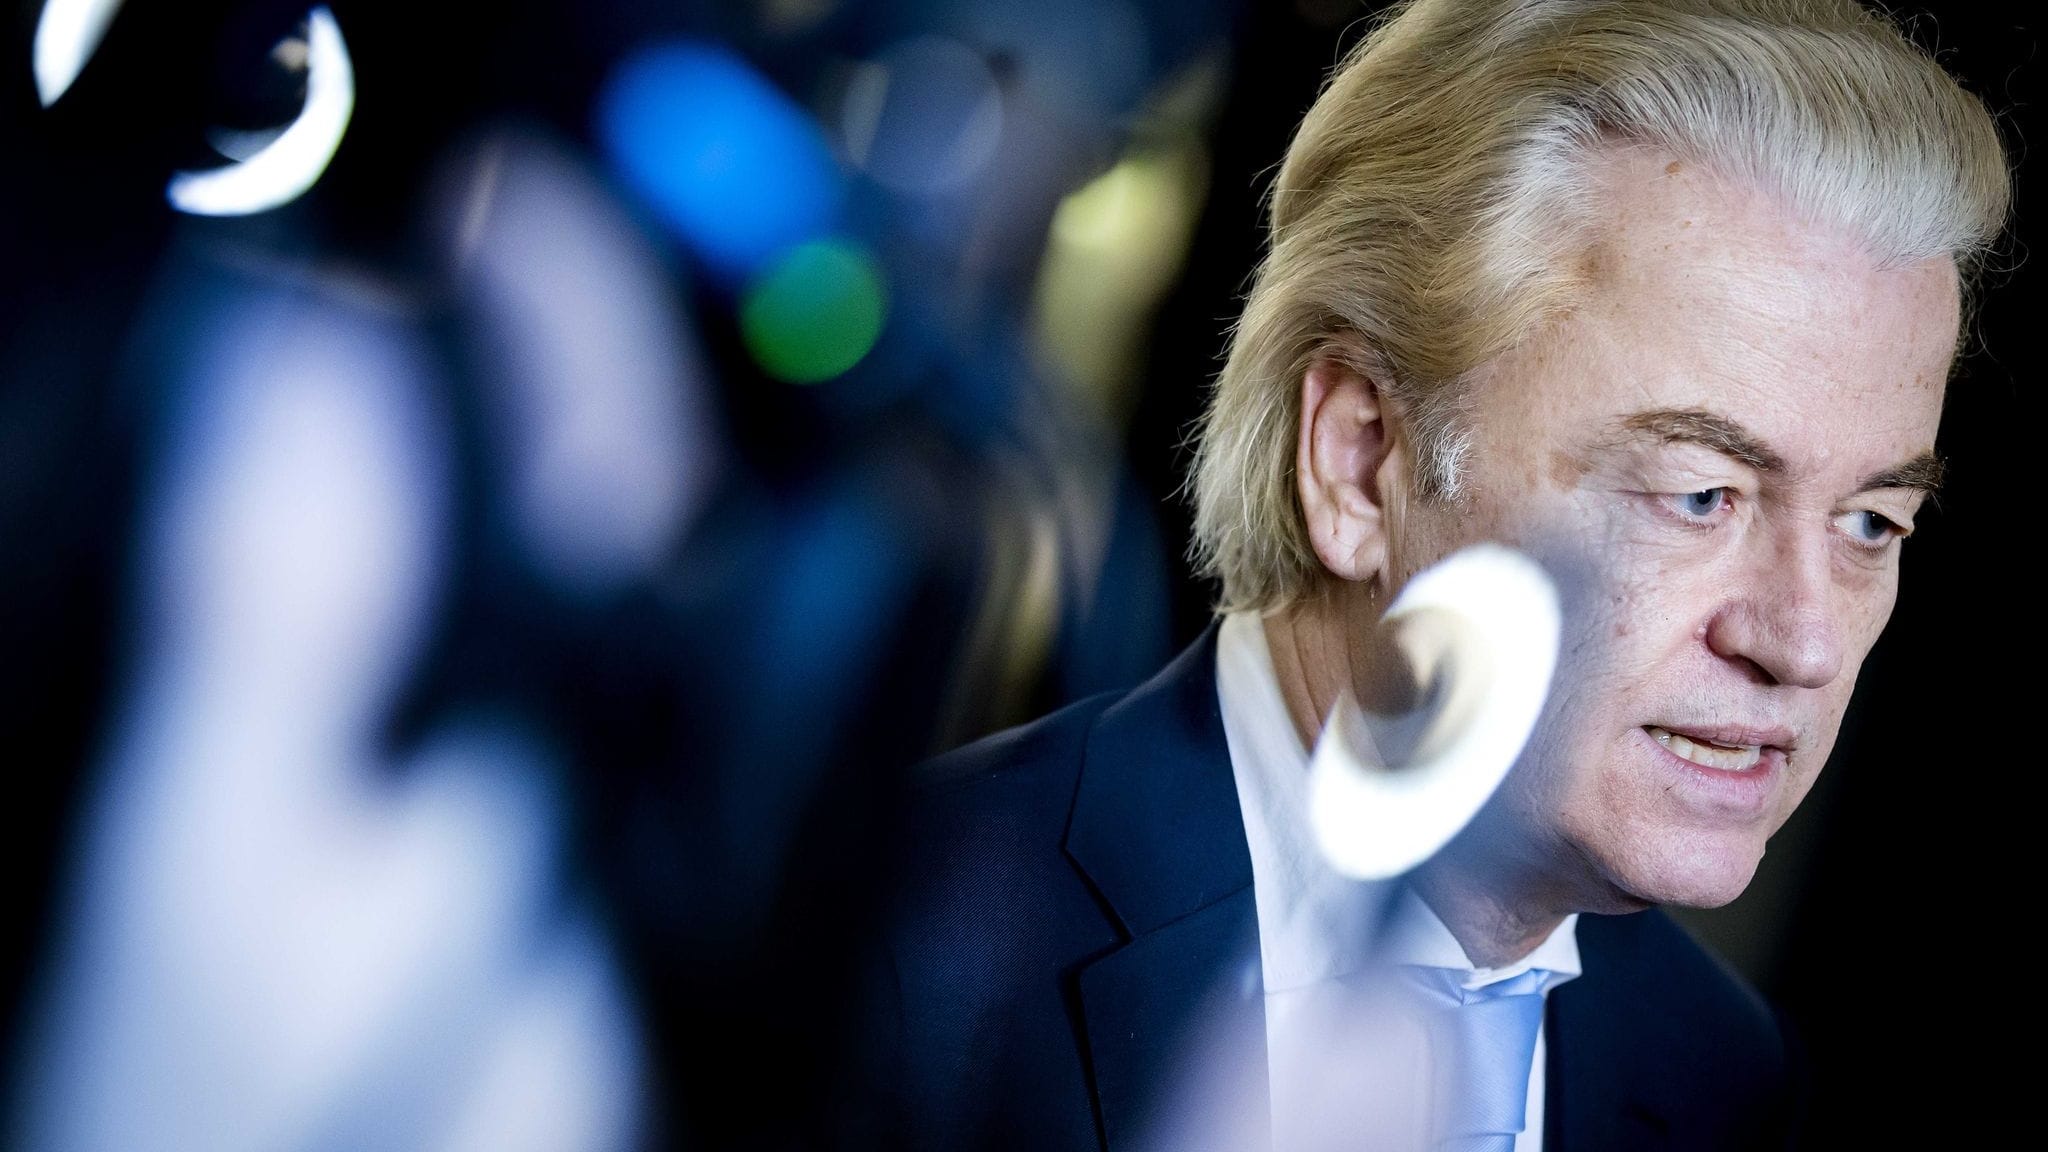 Niederlande | Weitere Partei lehnt Koalition mit Geert Wilders vorerst ab